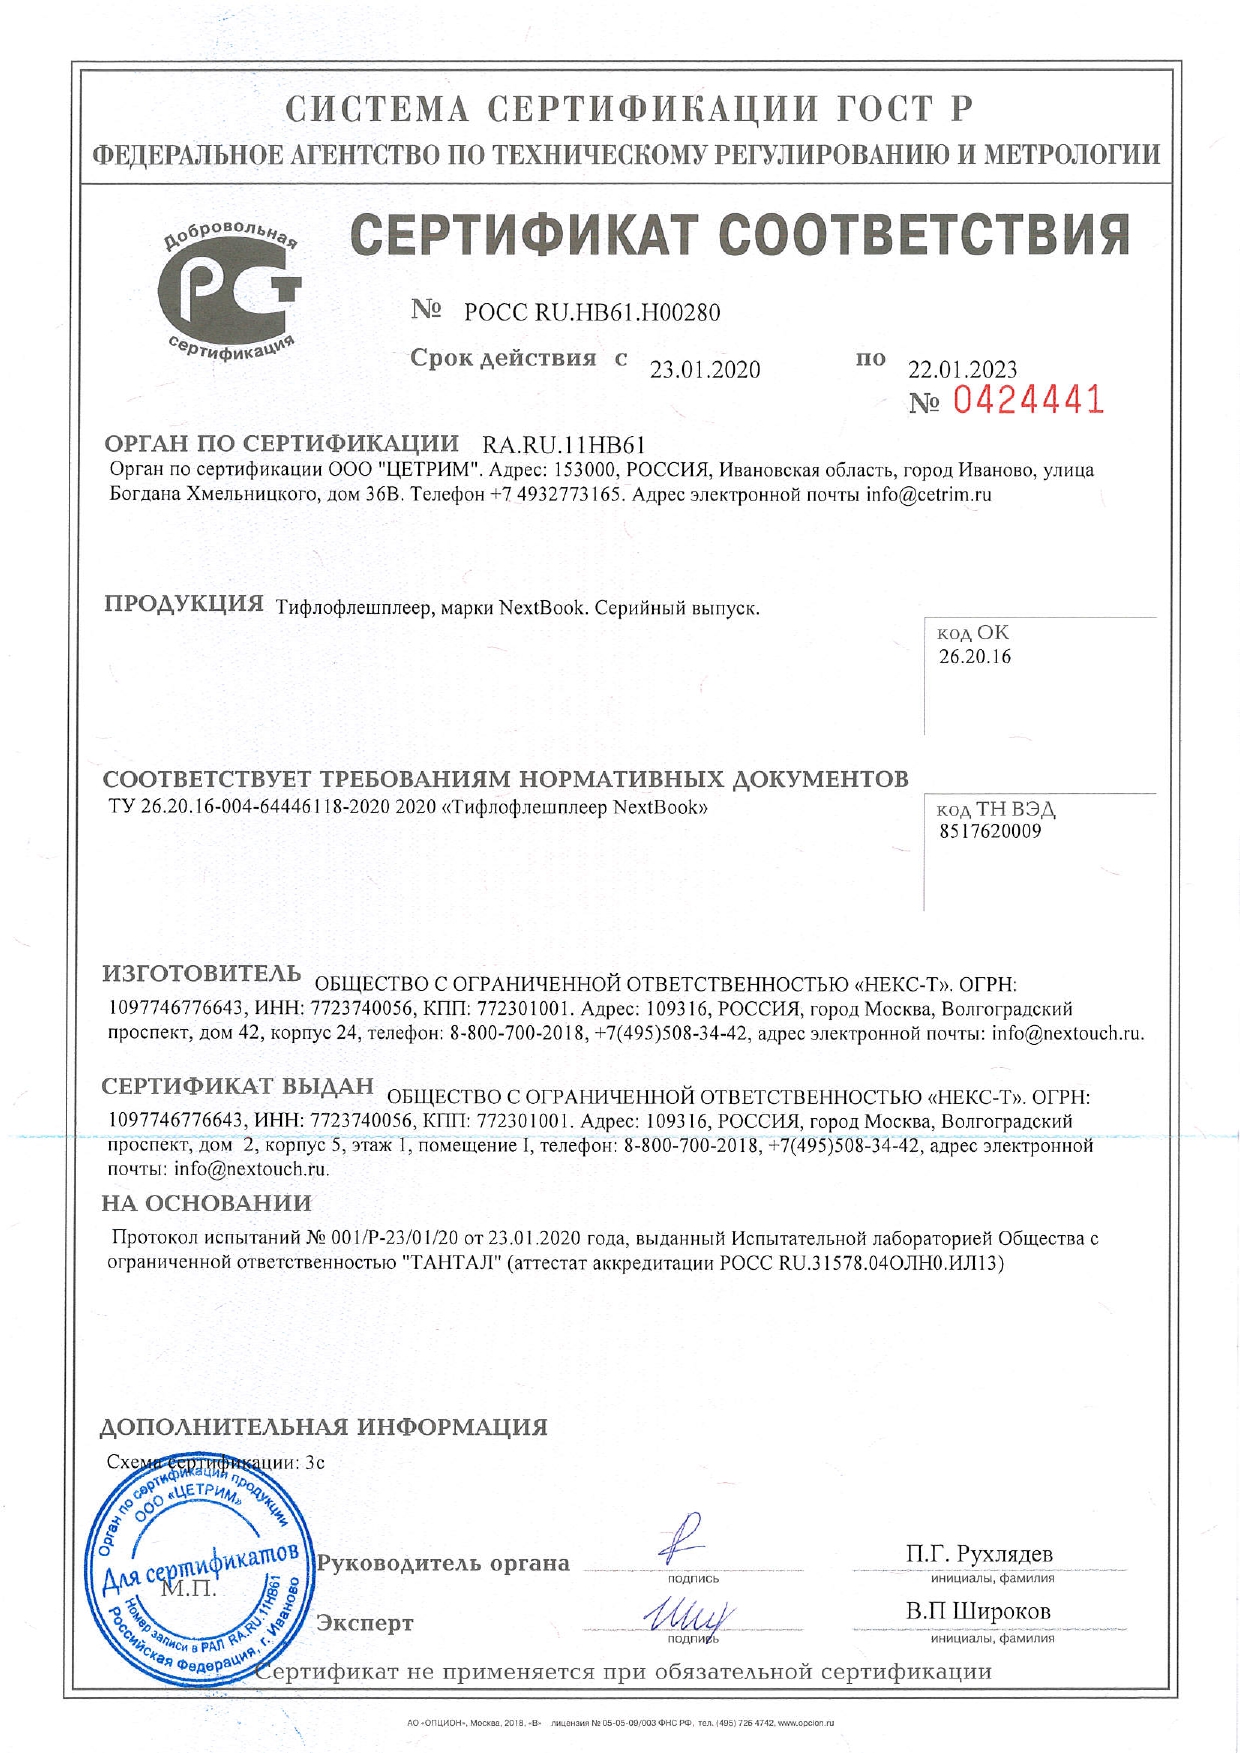 ГОСТ Р. Сертификат соответствия NextBook до 22.01.2023 г.